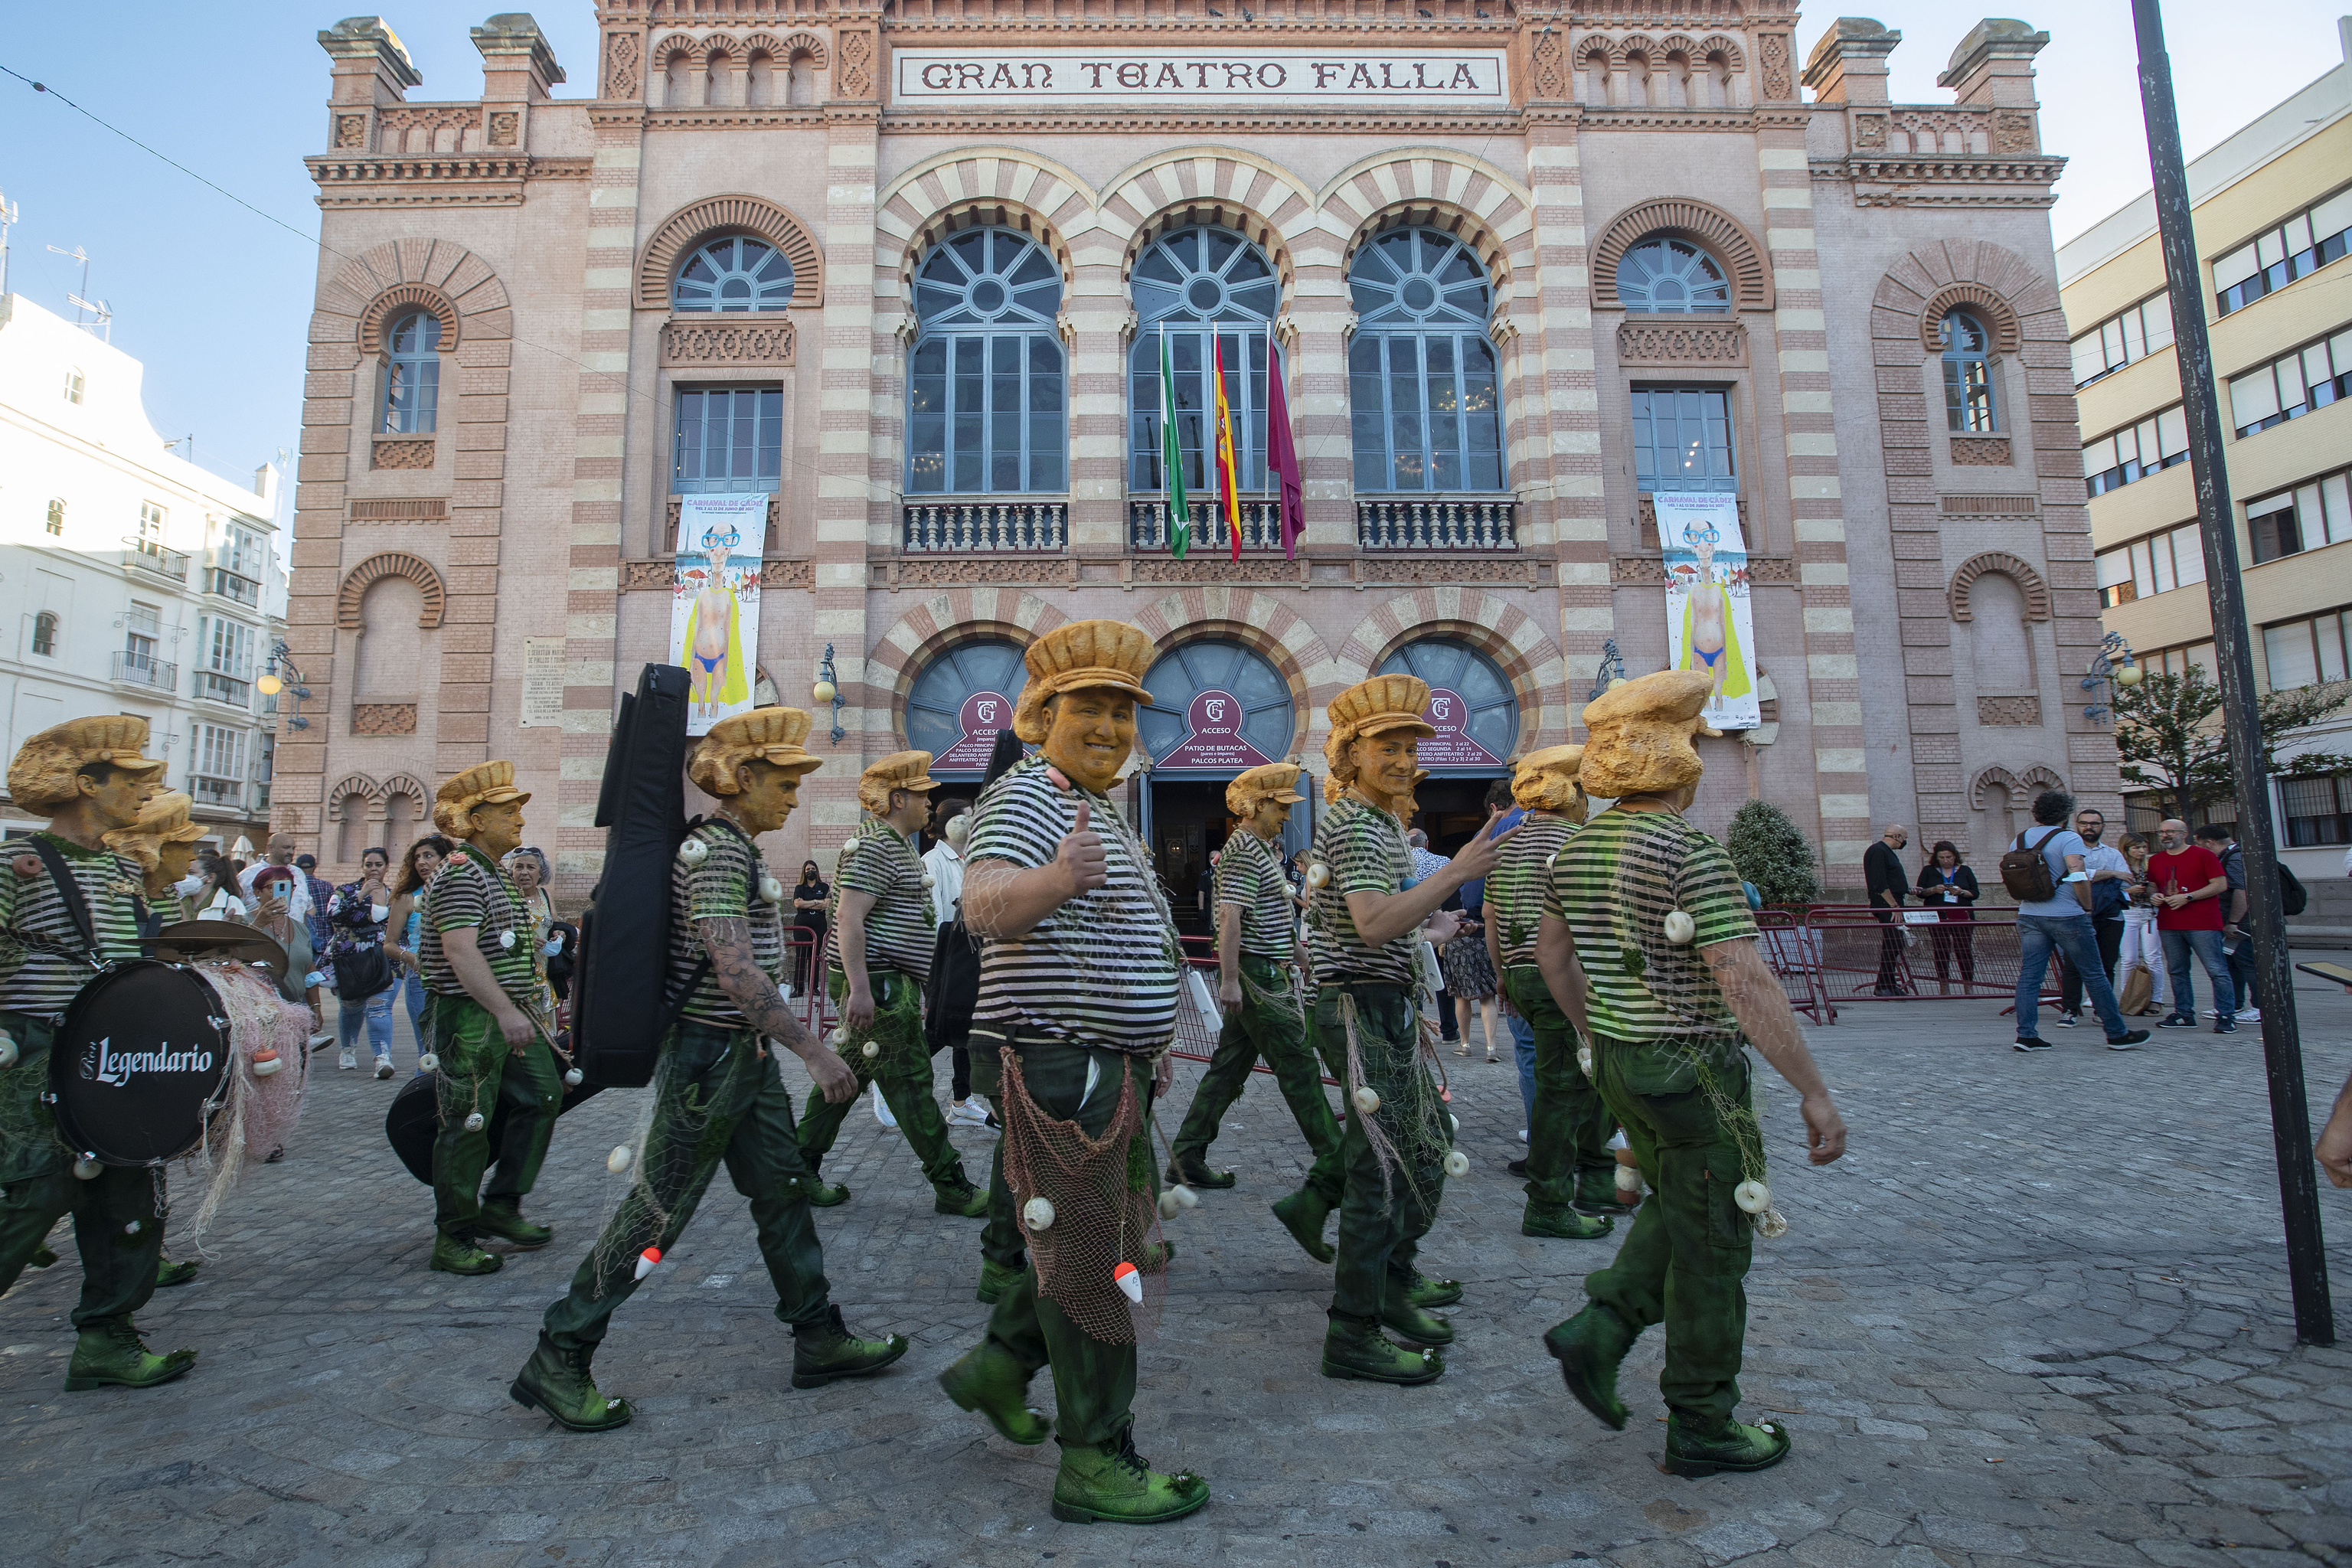 Agrupaciones participantes del Carnaval de Cádiz paseando ante el Teatro de Falla.